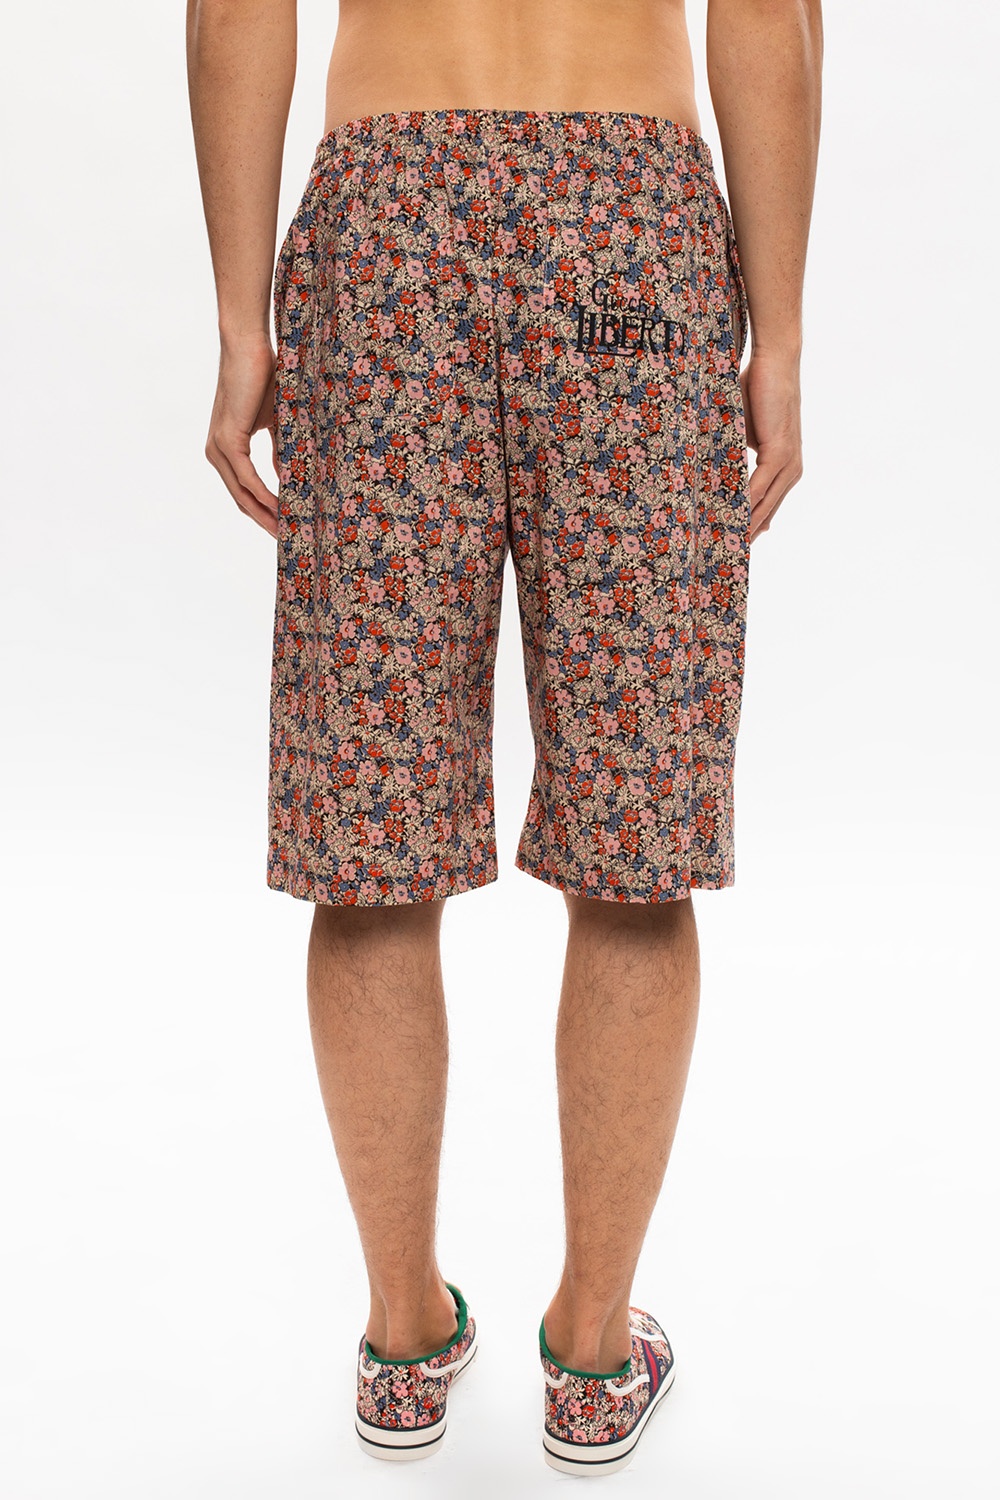 Gucci Floral-printed shorts